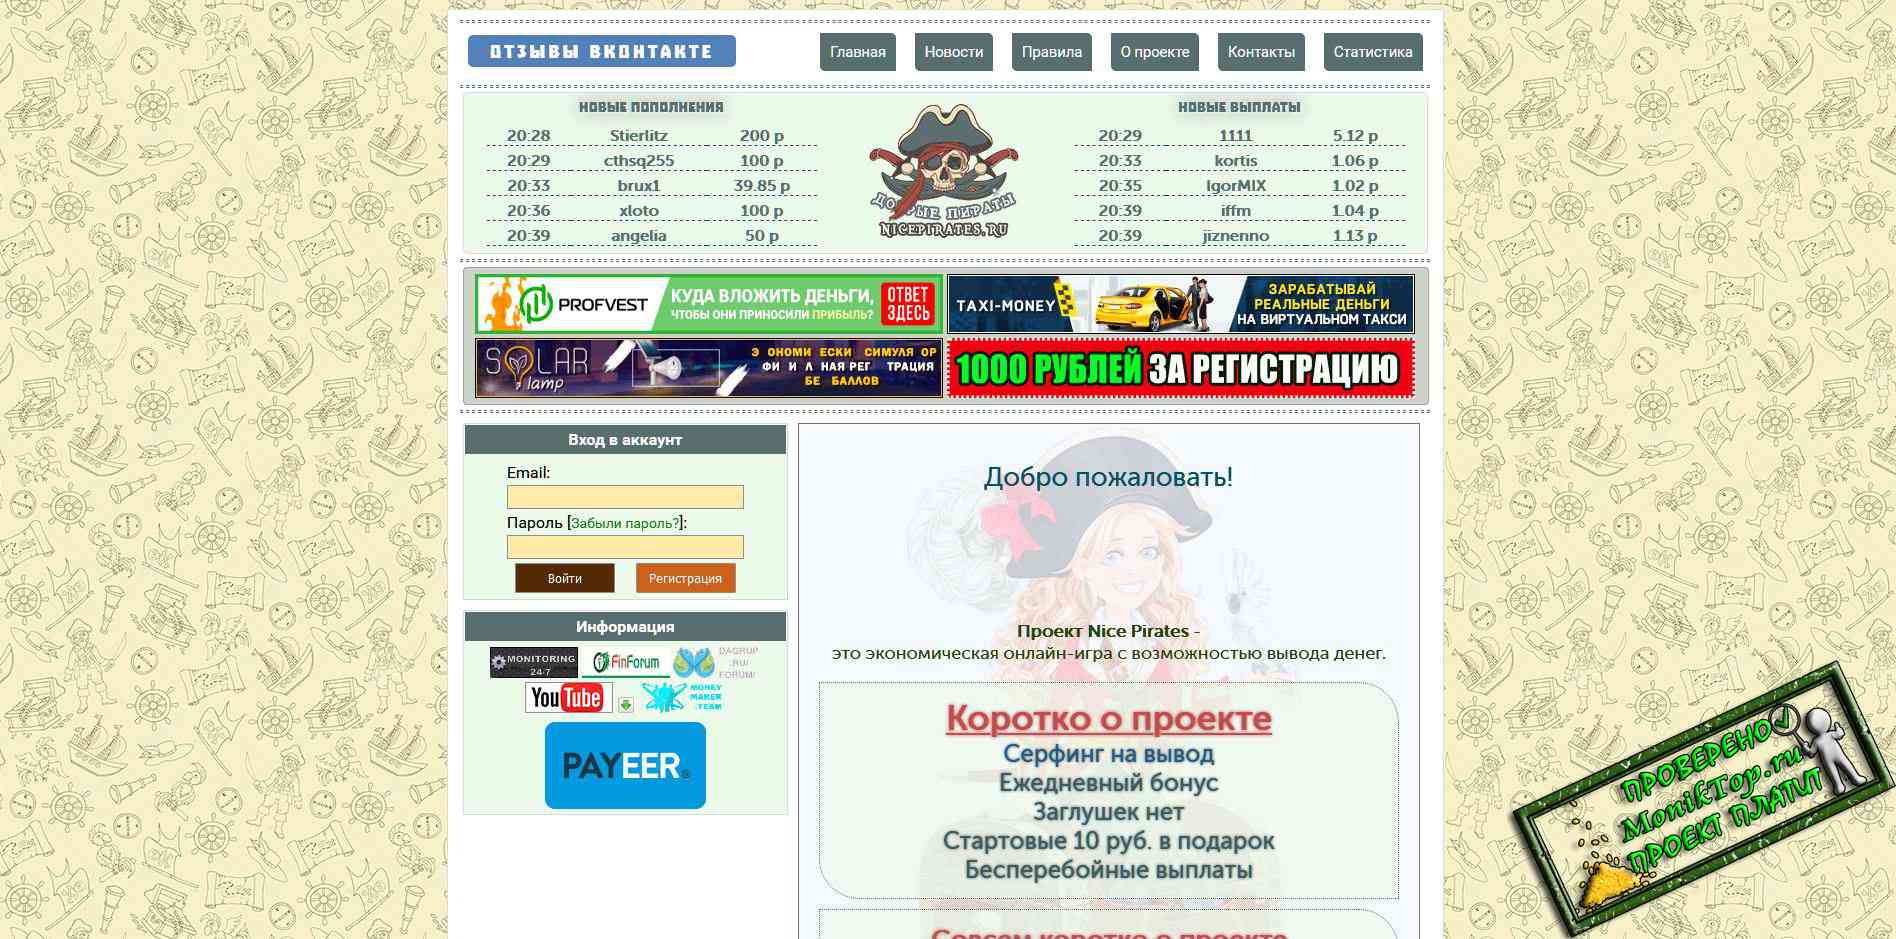 Заработок в телеграмме без вложений с выводом денег на карту сбербанка на русском фото 97